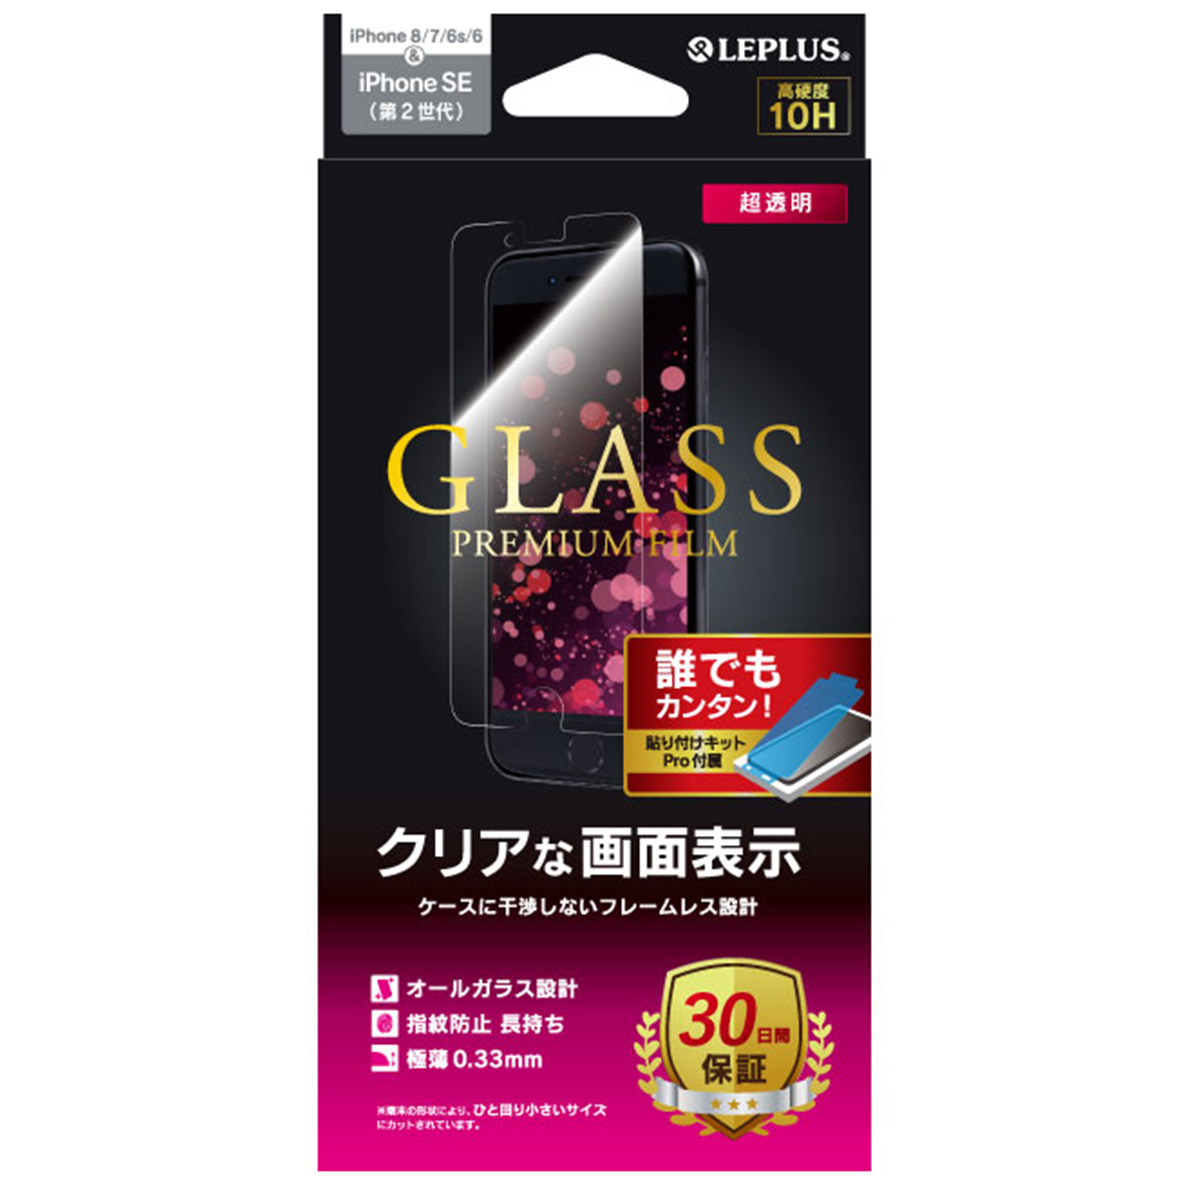 iPhone SE（第2世代）/ 8 / 7 / 6s / 6 ガラスフィルム「GLASS PREMIUM FILM」 スタンダードサイズ 超透明